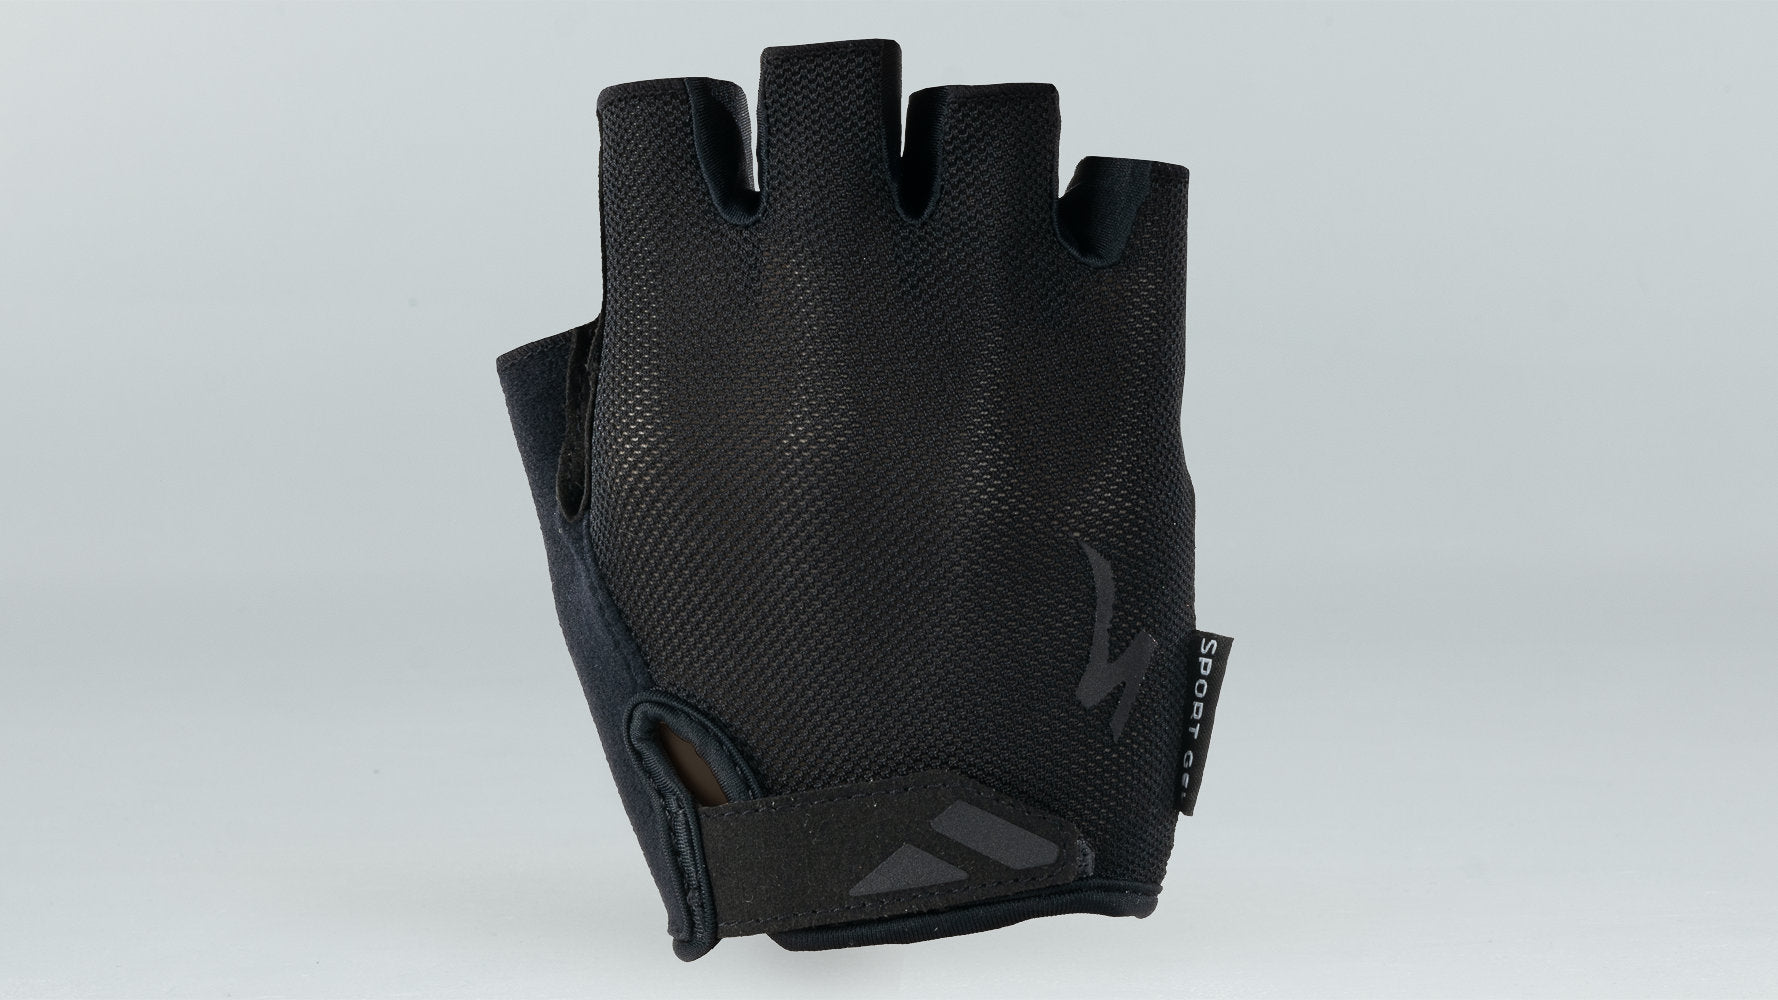 Specialized Men's Body Geometry Sport Gel Gloves